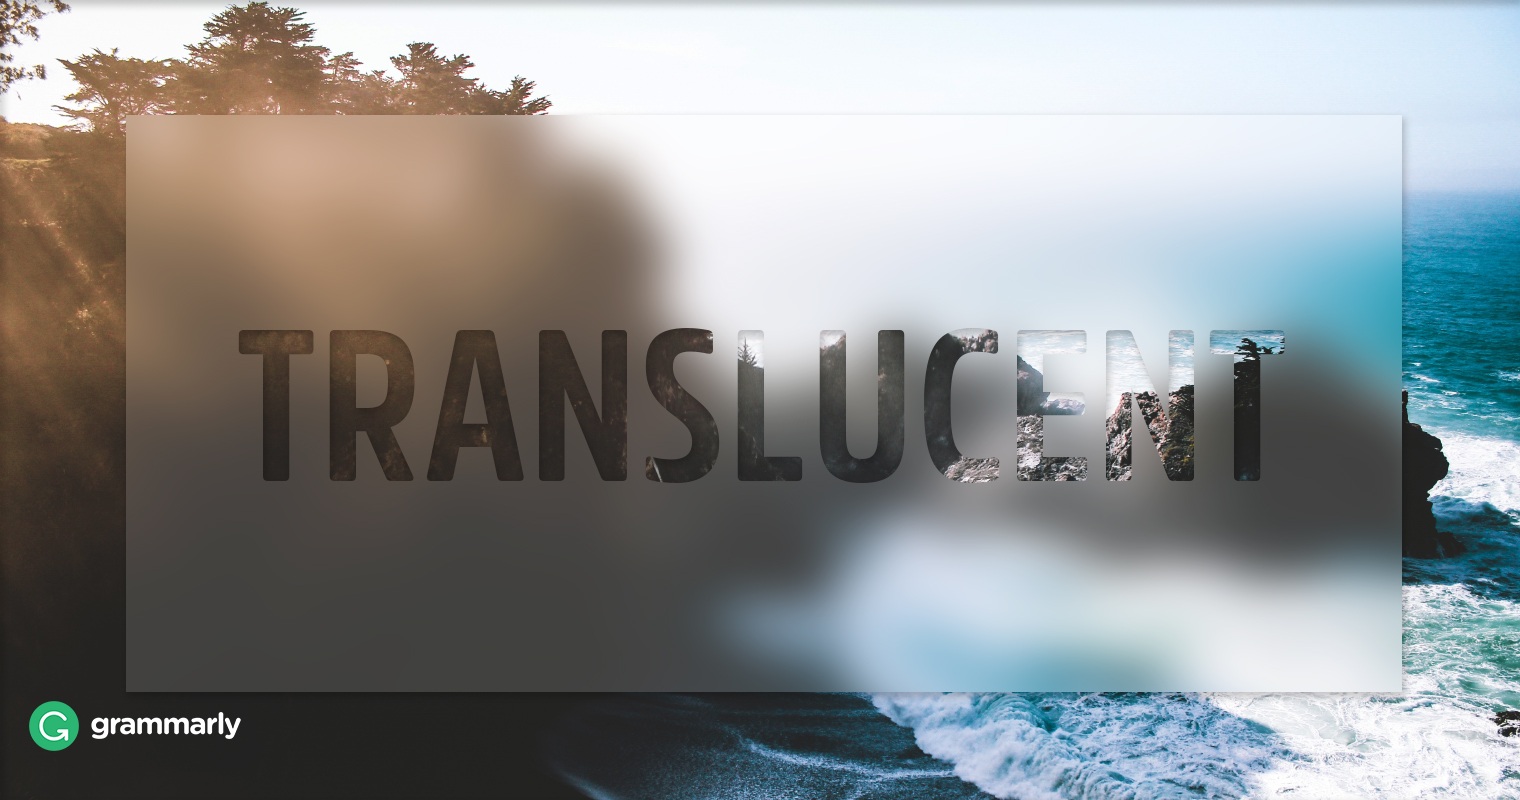 Translucent Definition | Grammarly Blog